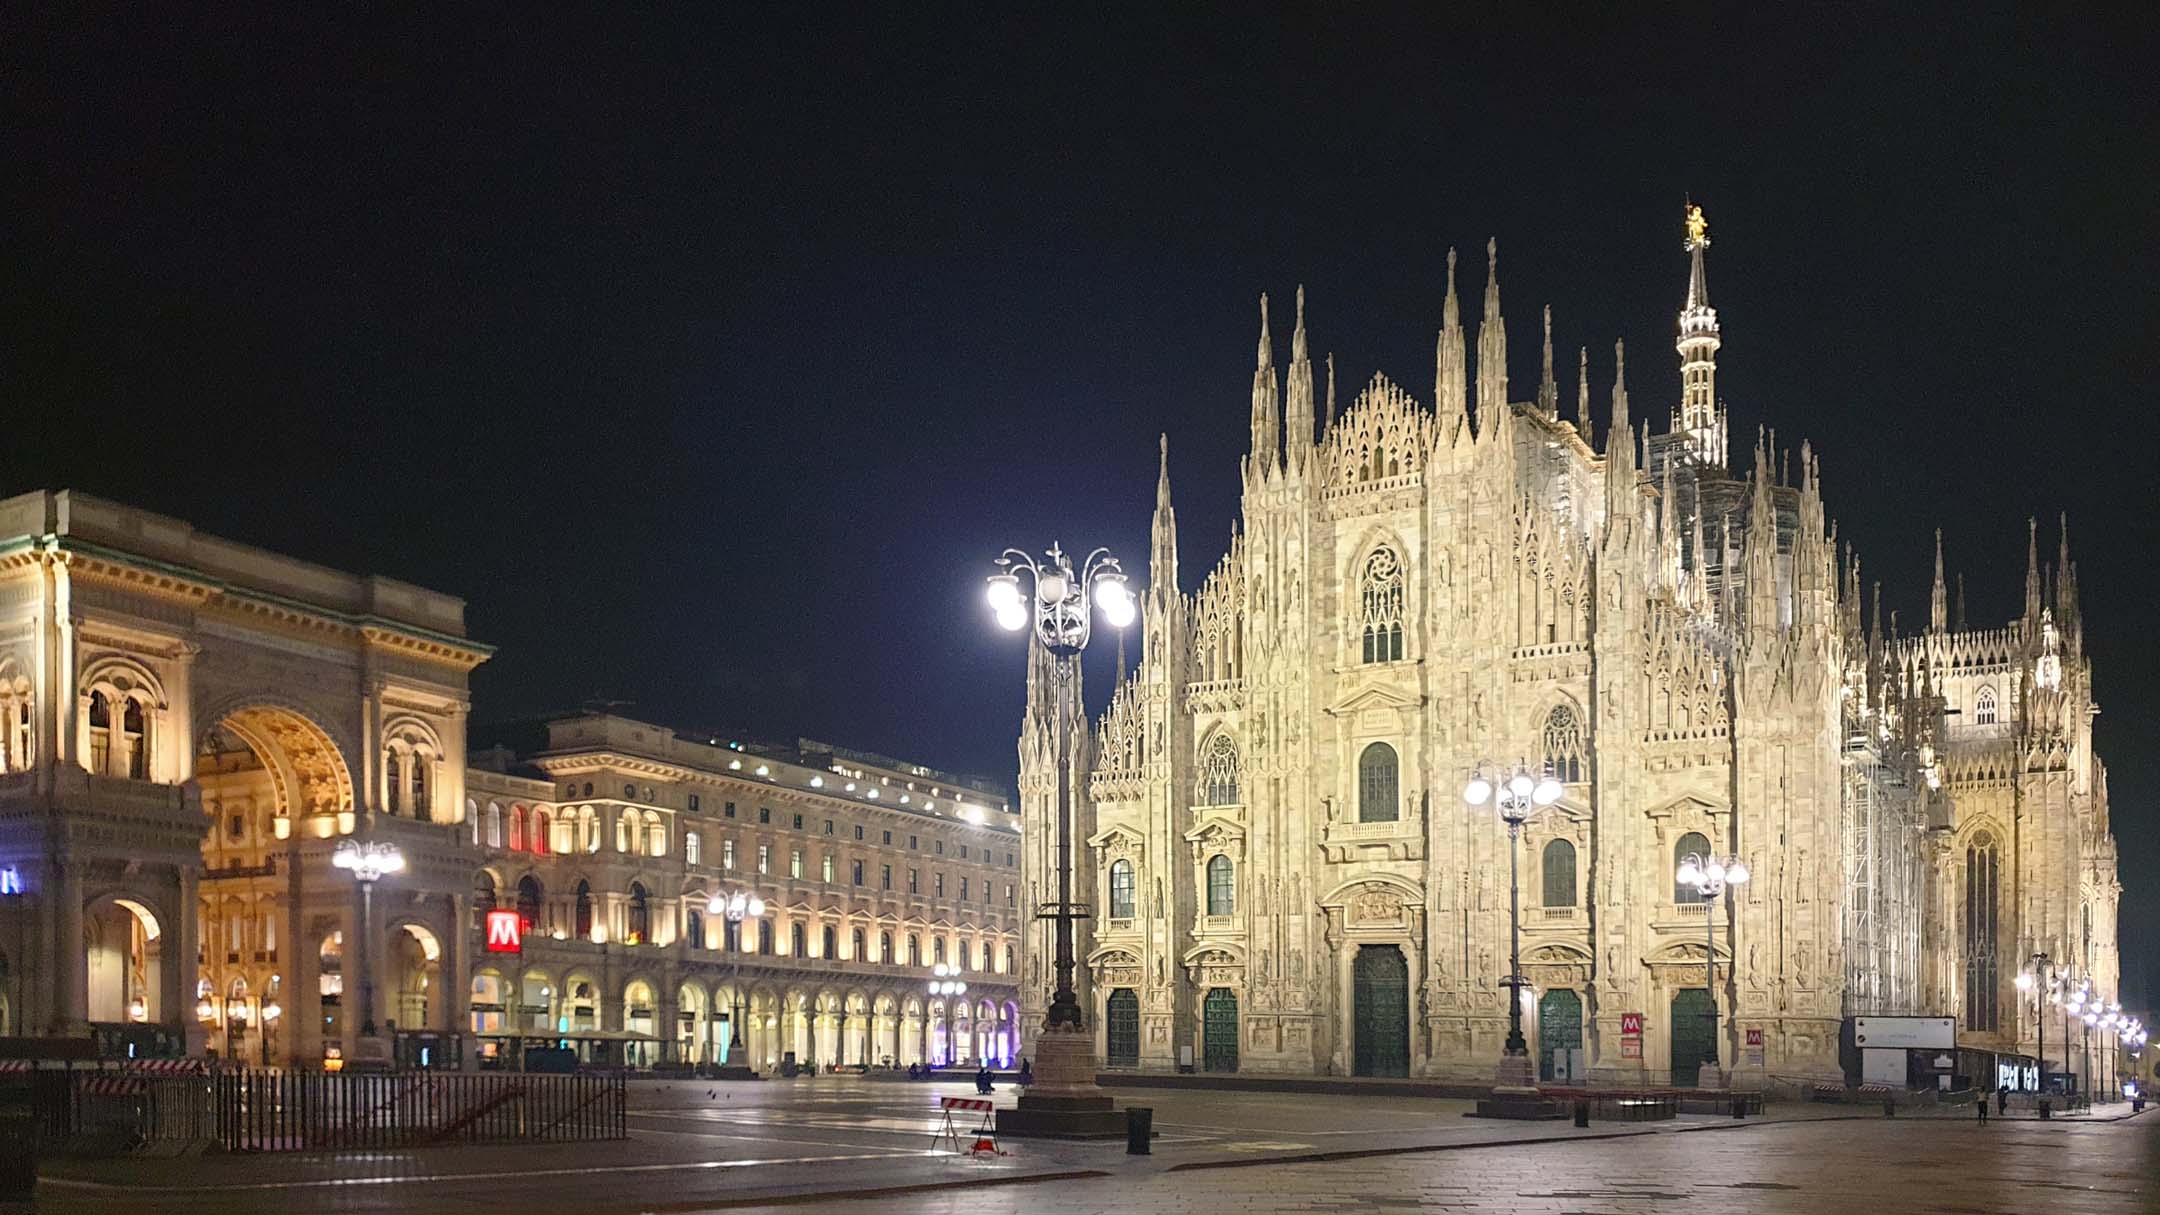 Piazza del Duomo Milano